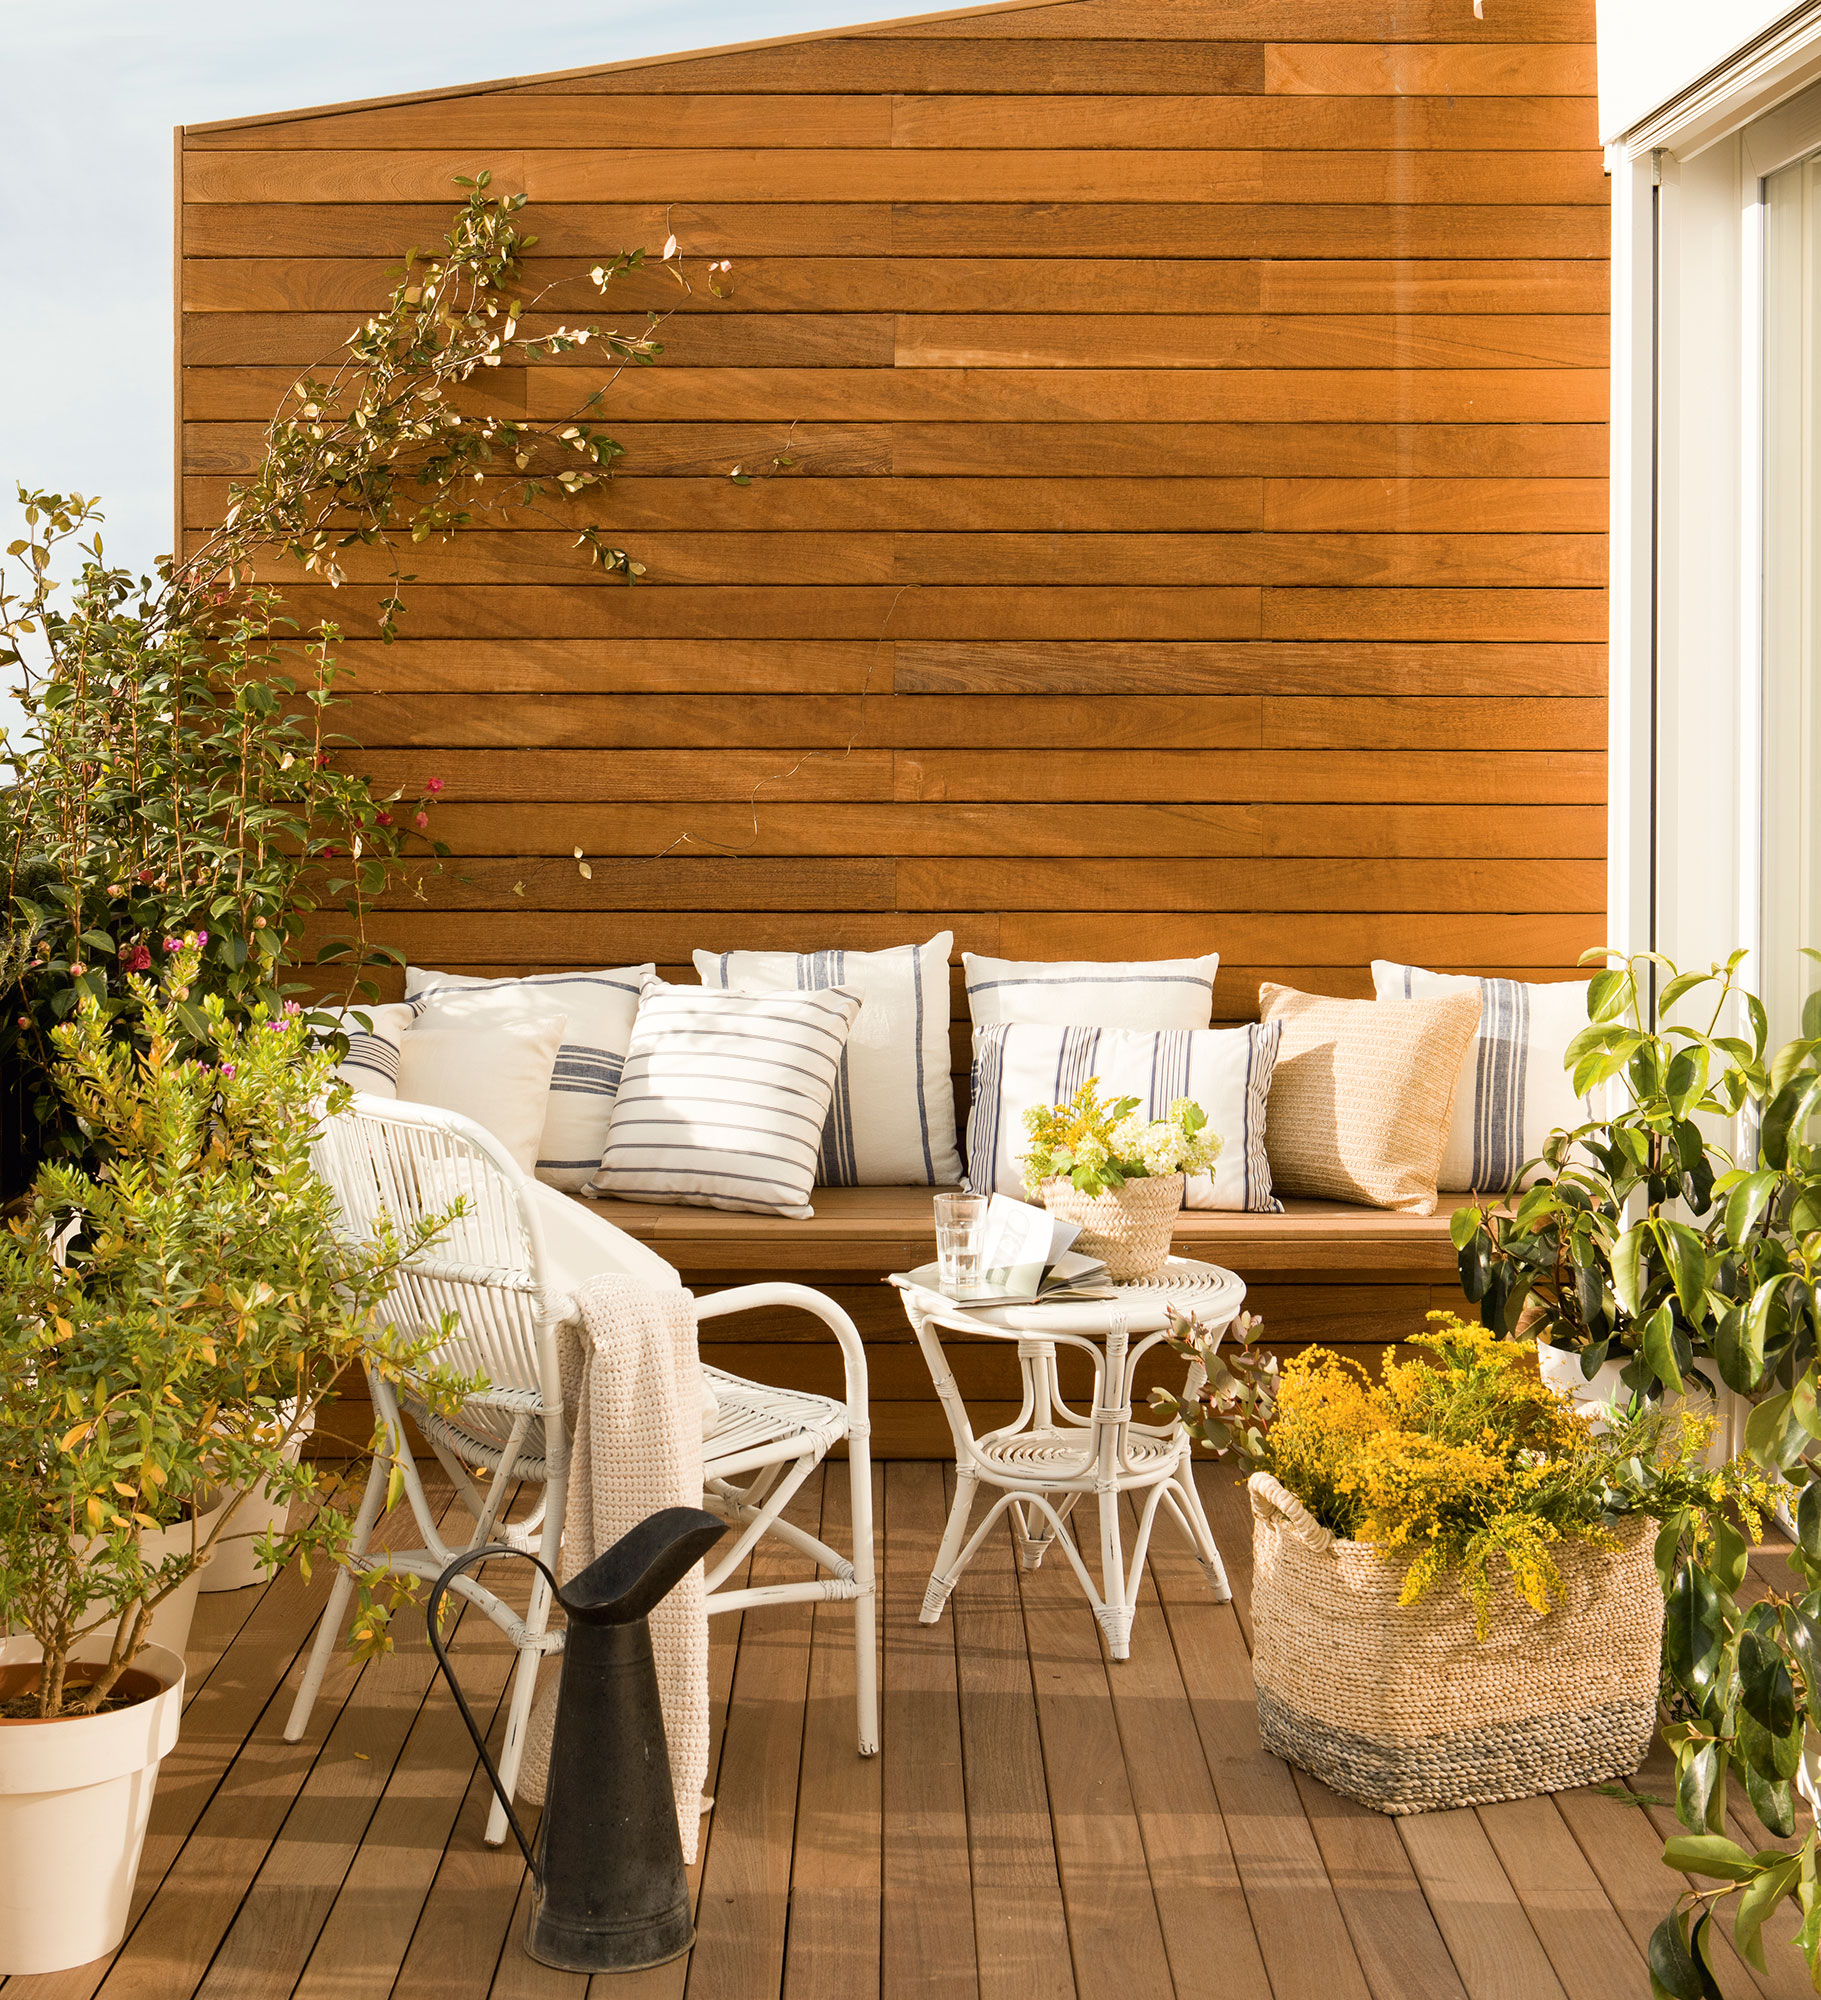 Terraza con banco de madera integrado en la pared y decorado con cojines frente a una mesa y una butaca de fibras en color blanco